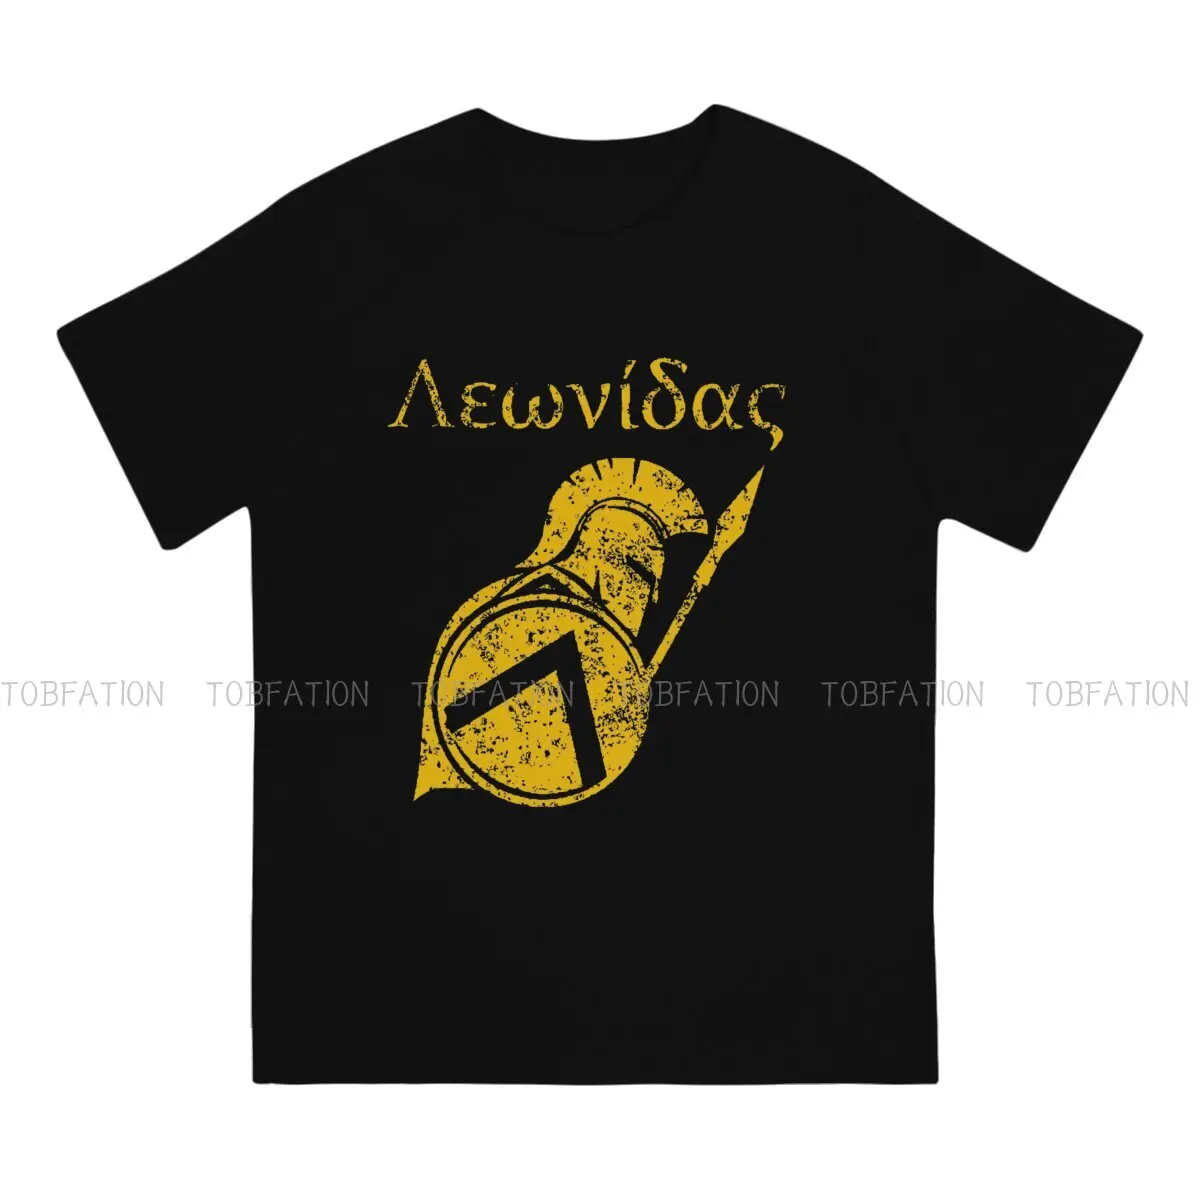 Мъжка тениска Александра Roman Mythology 